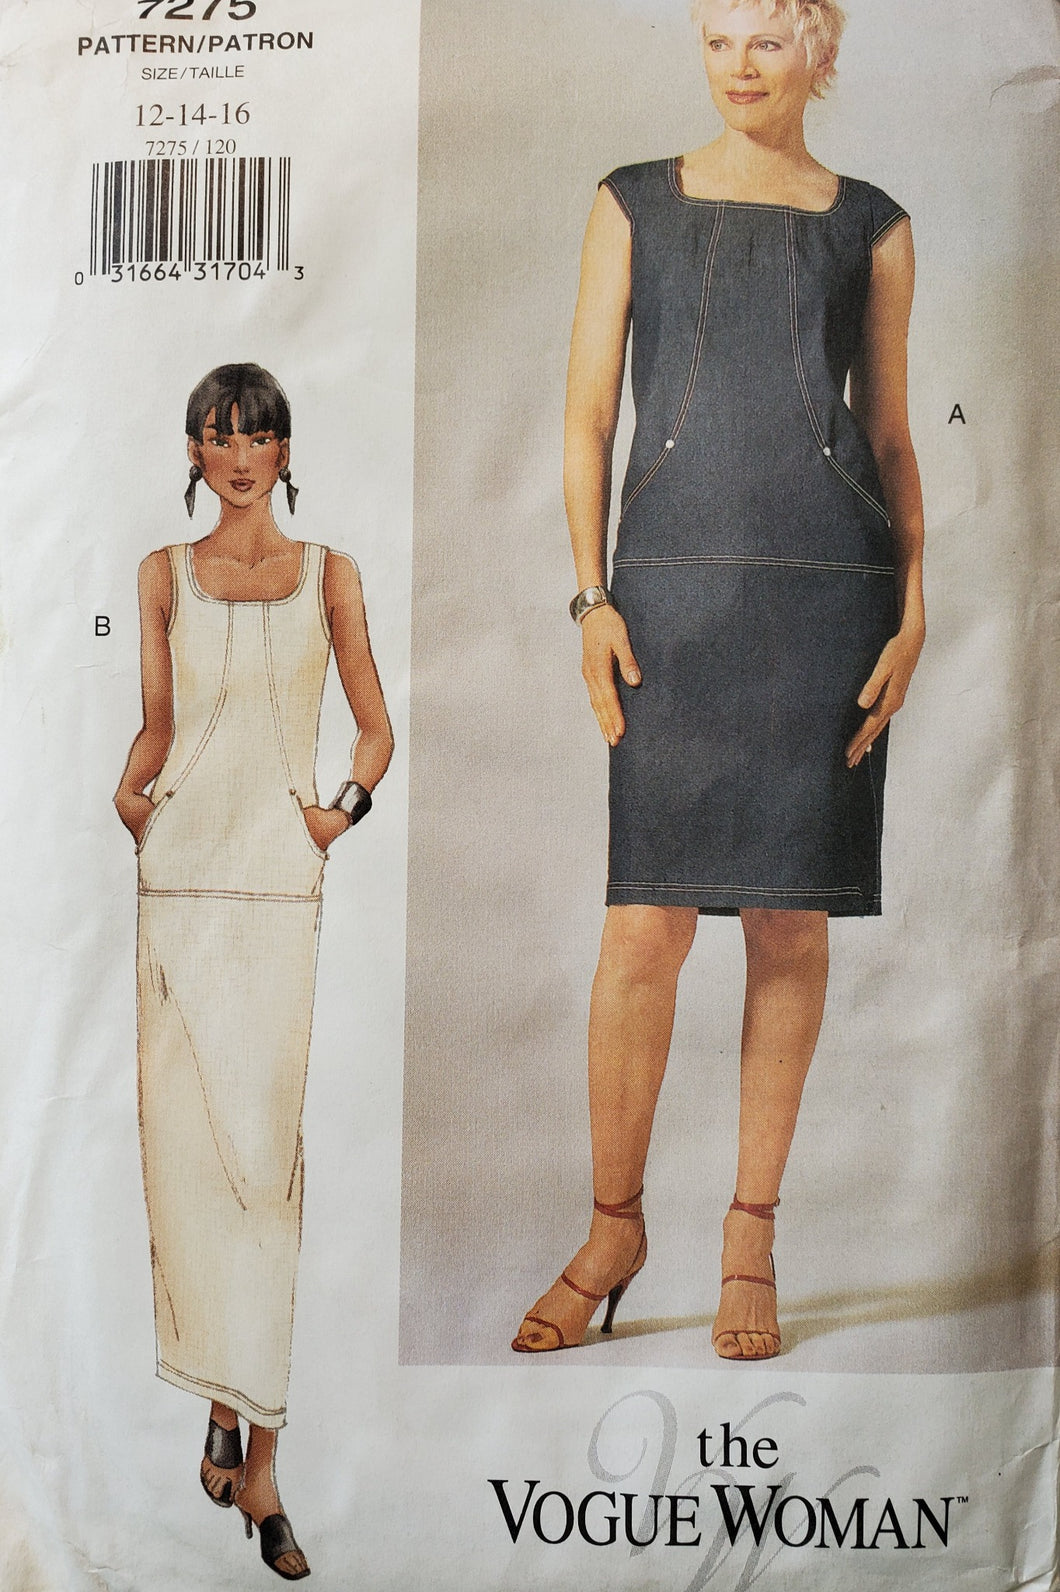  Vogue Pattern 7275, UNCUT, Dress Size 12-14-16, Vintage & Rare